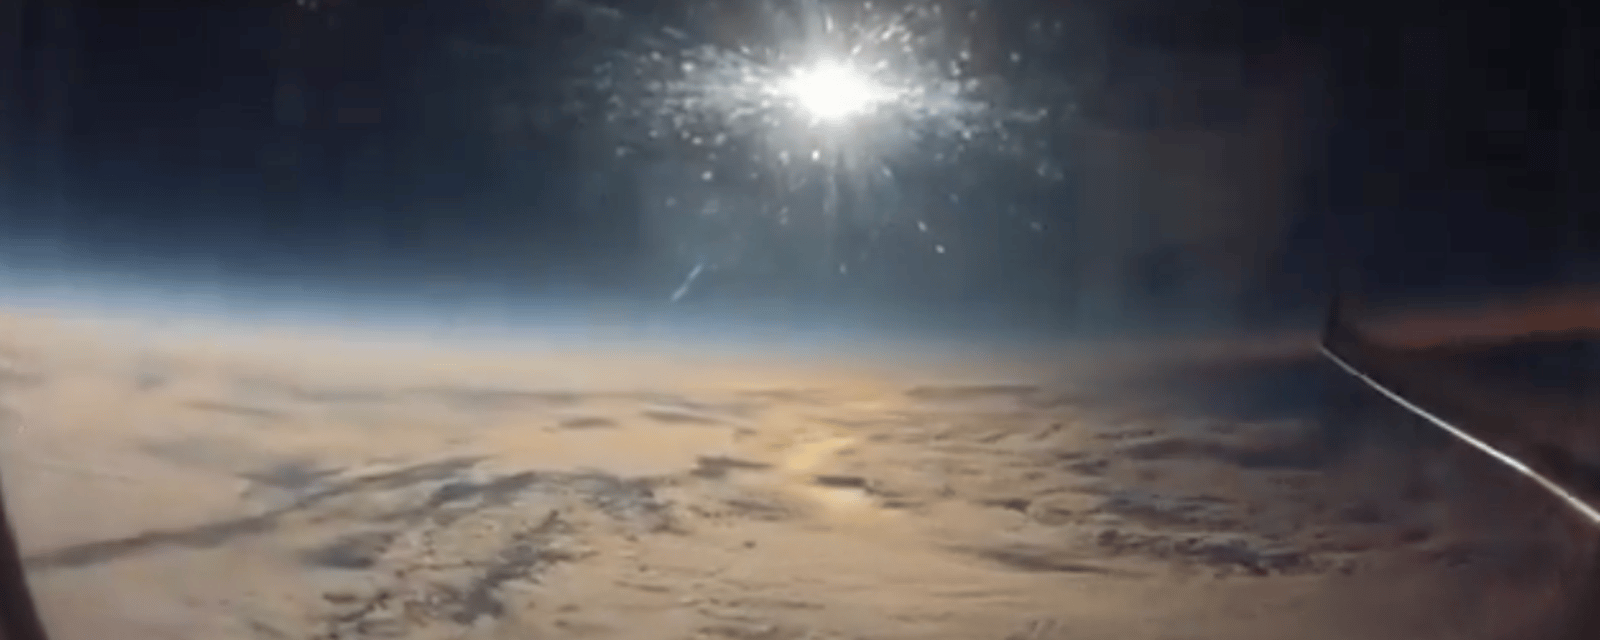 Voici à quoi ressemblait l'éclipse solaire vue d'un avion 